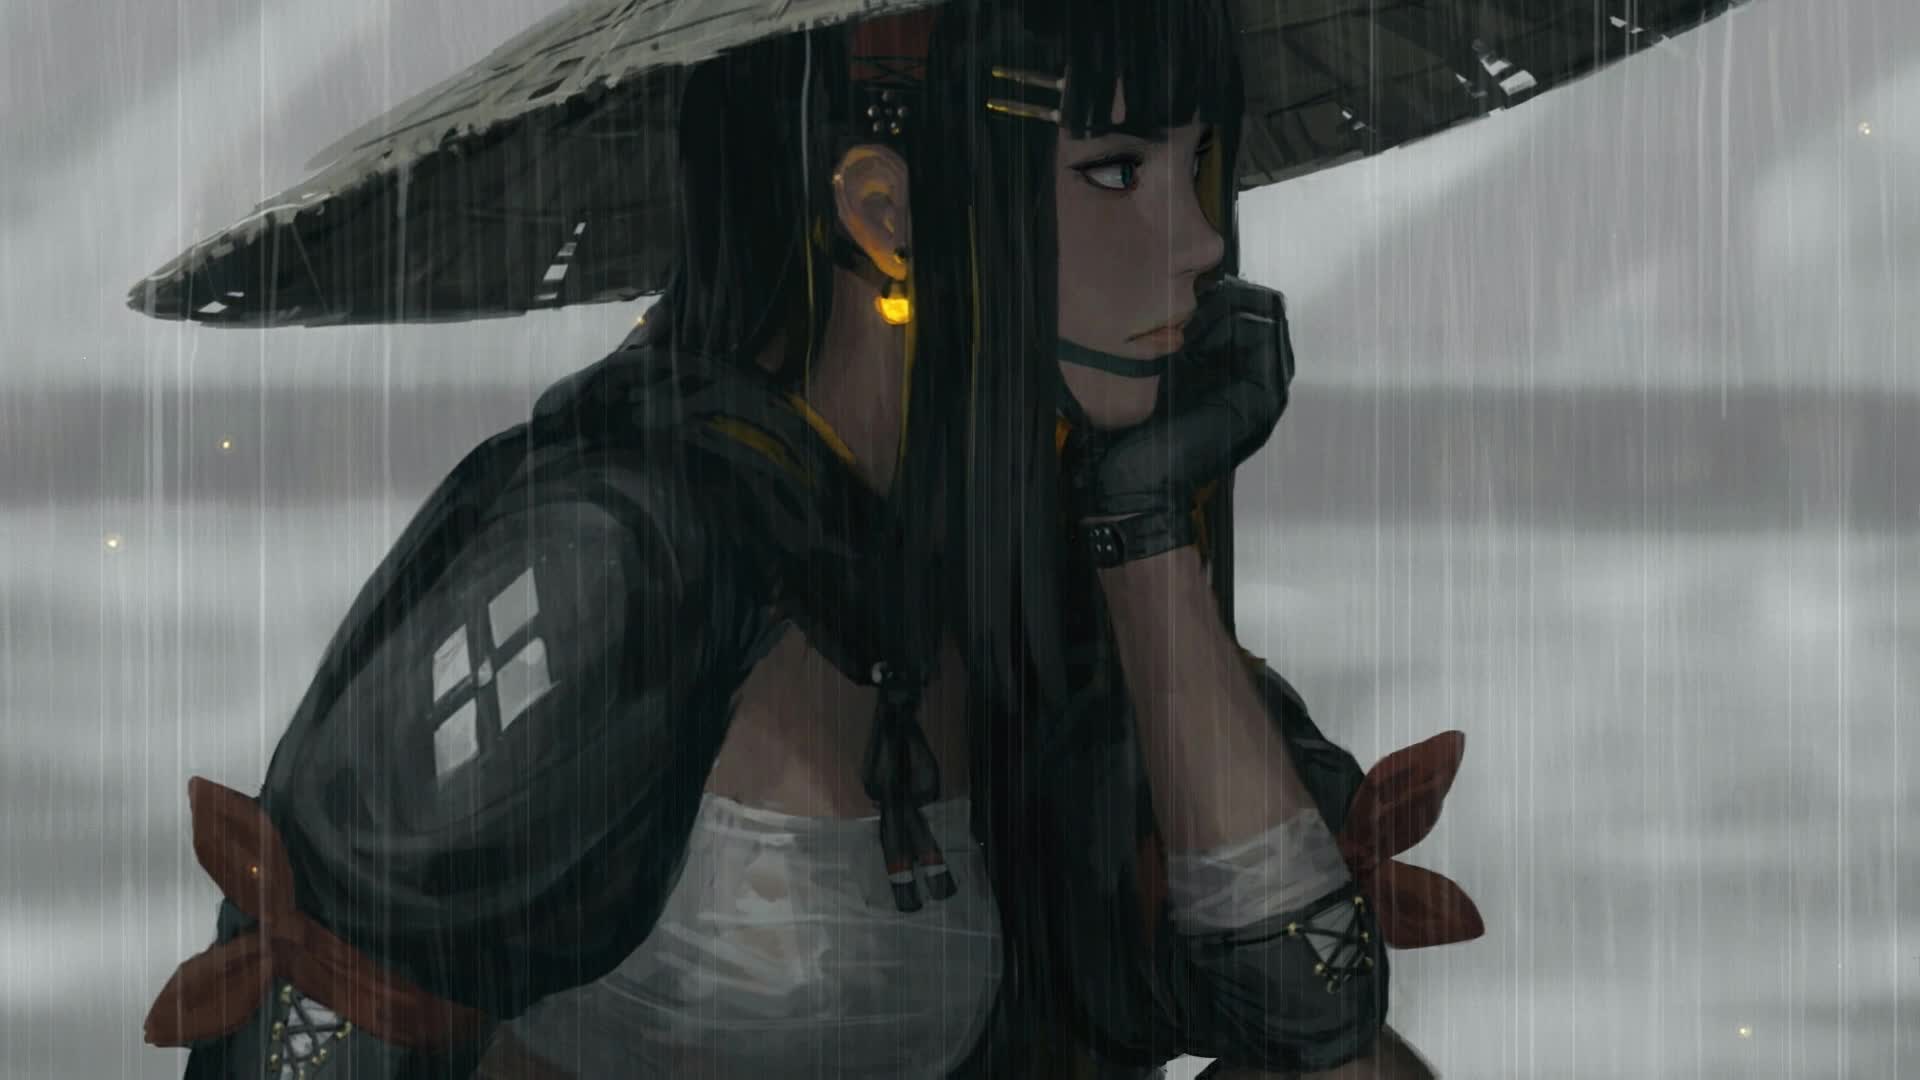 Anime Samurai Girl Day Night Wallpaper, Animated Wallpaper, Live Wallpaper